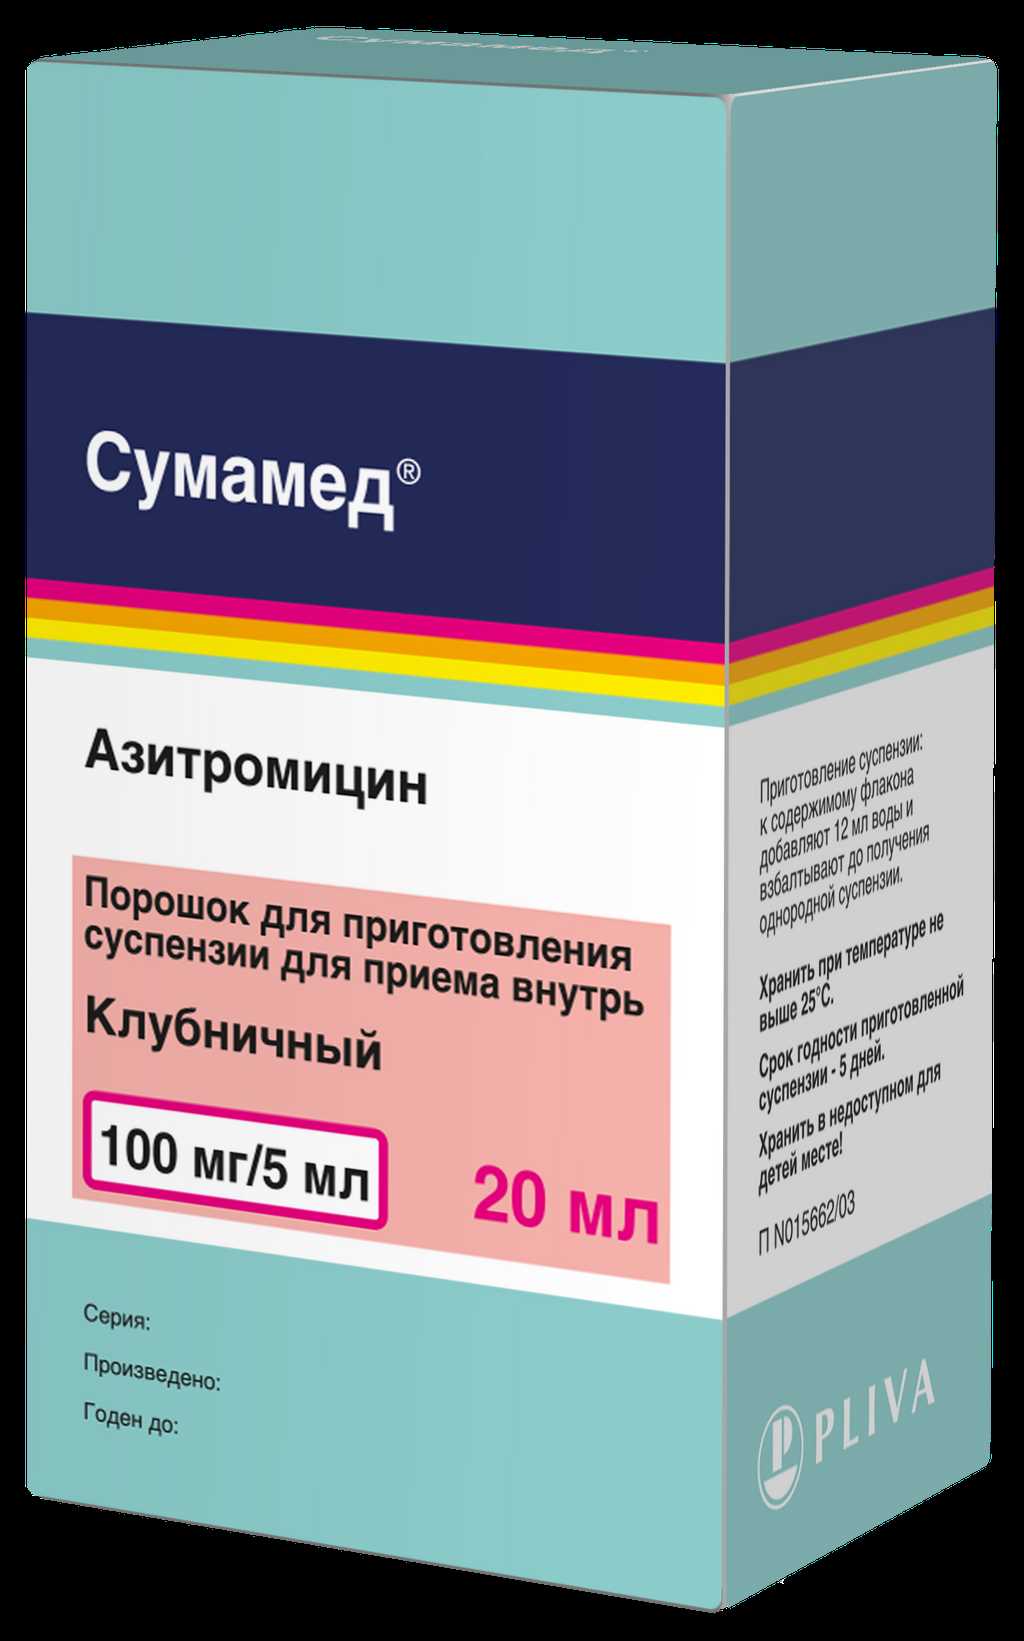 Сумамед: лекарство от бактериальной инфекции с широким спектром действия